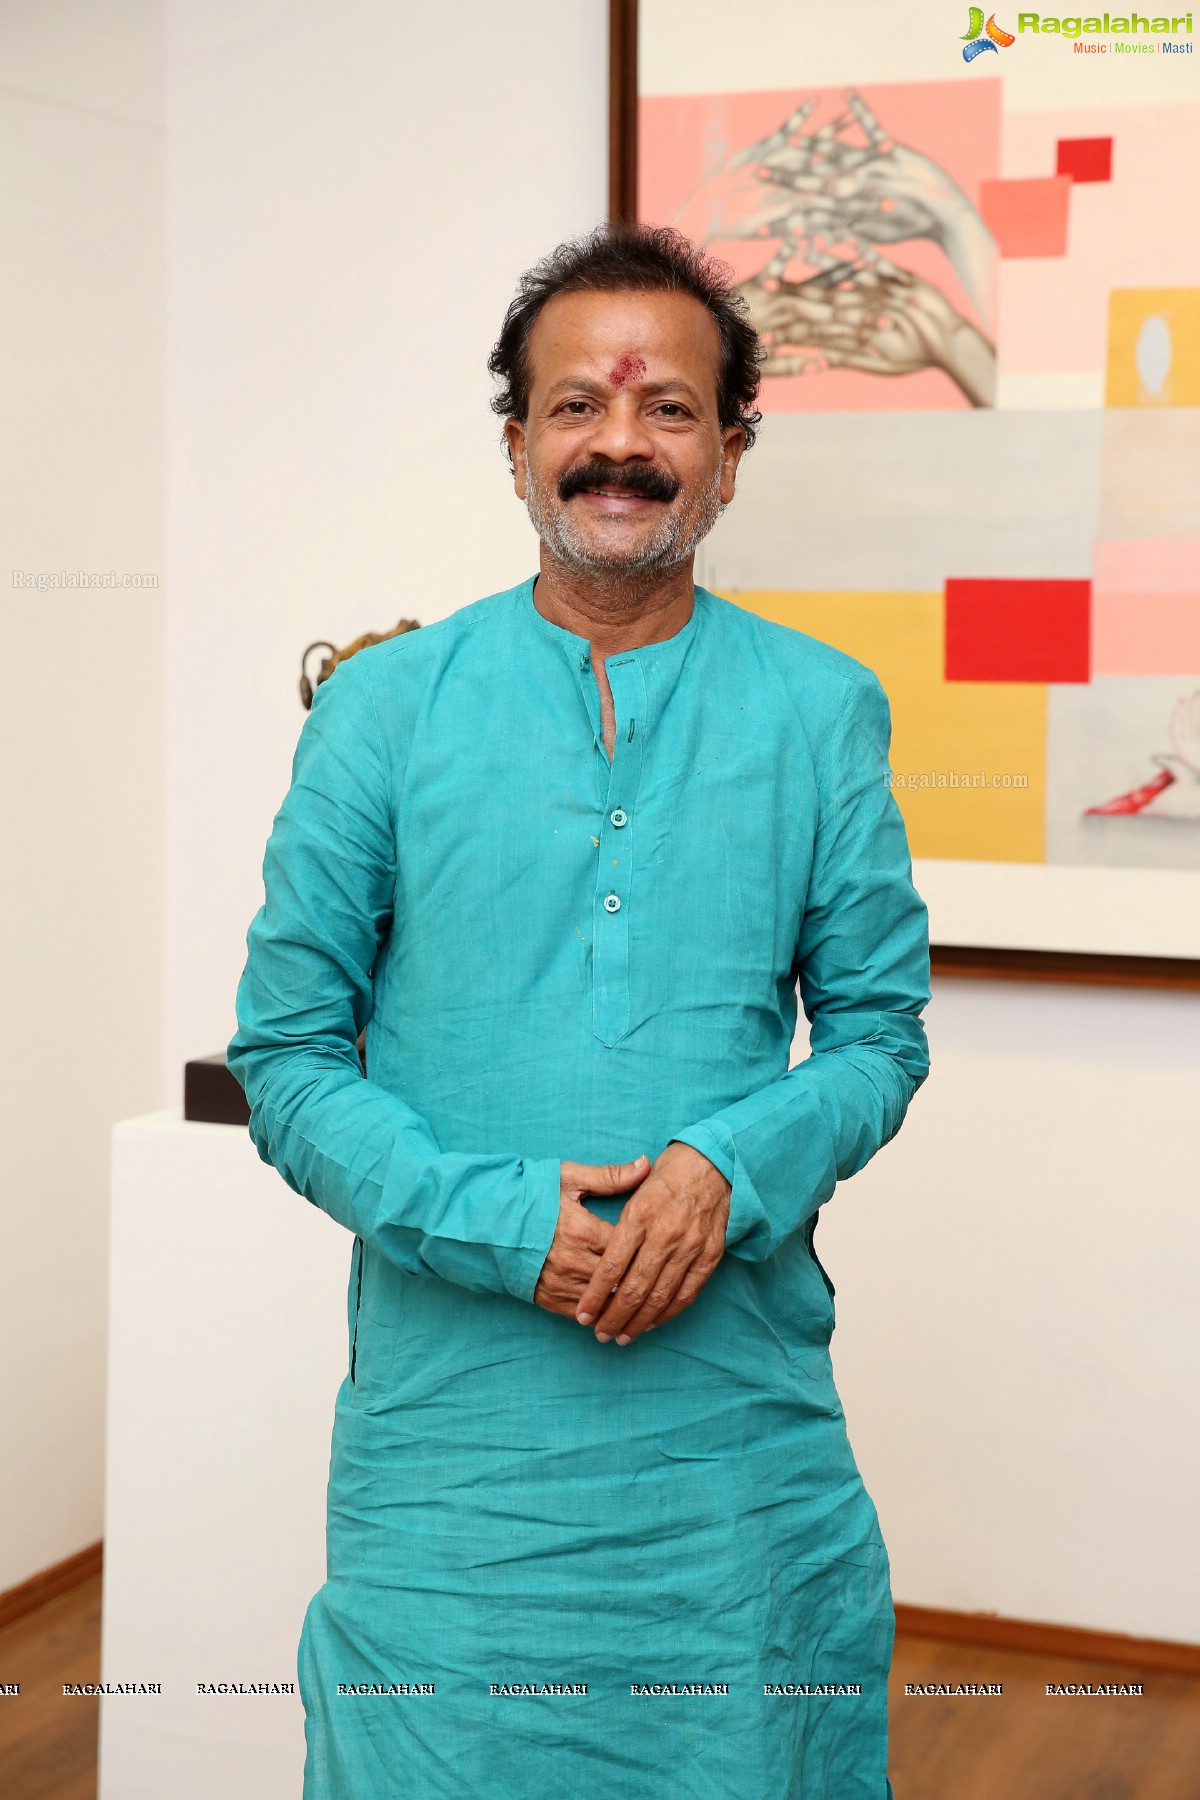 'Soaring Beyond the Self' Inauguration by Renuka Sondhi Gulati at Kalakrithi